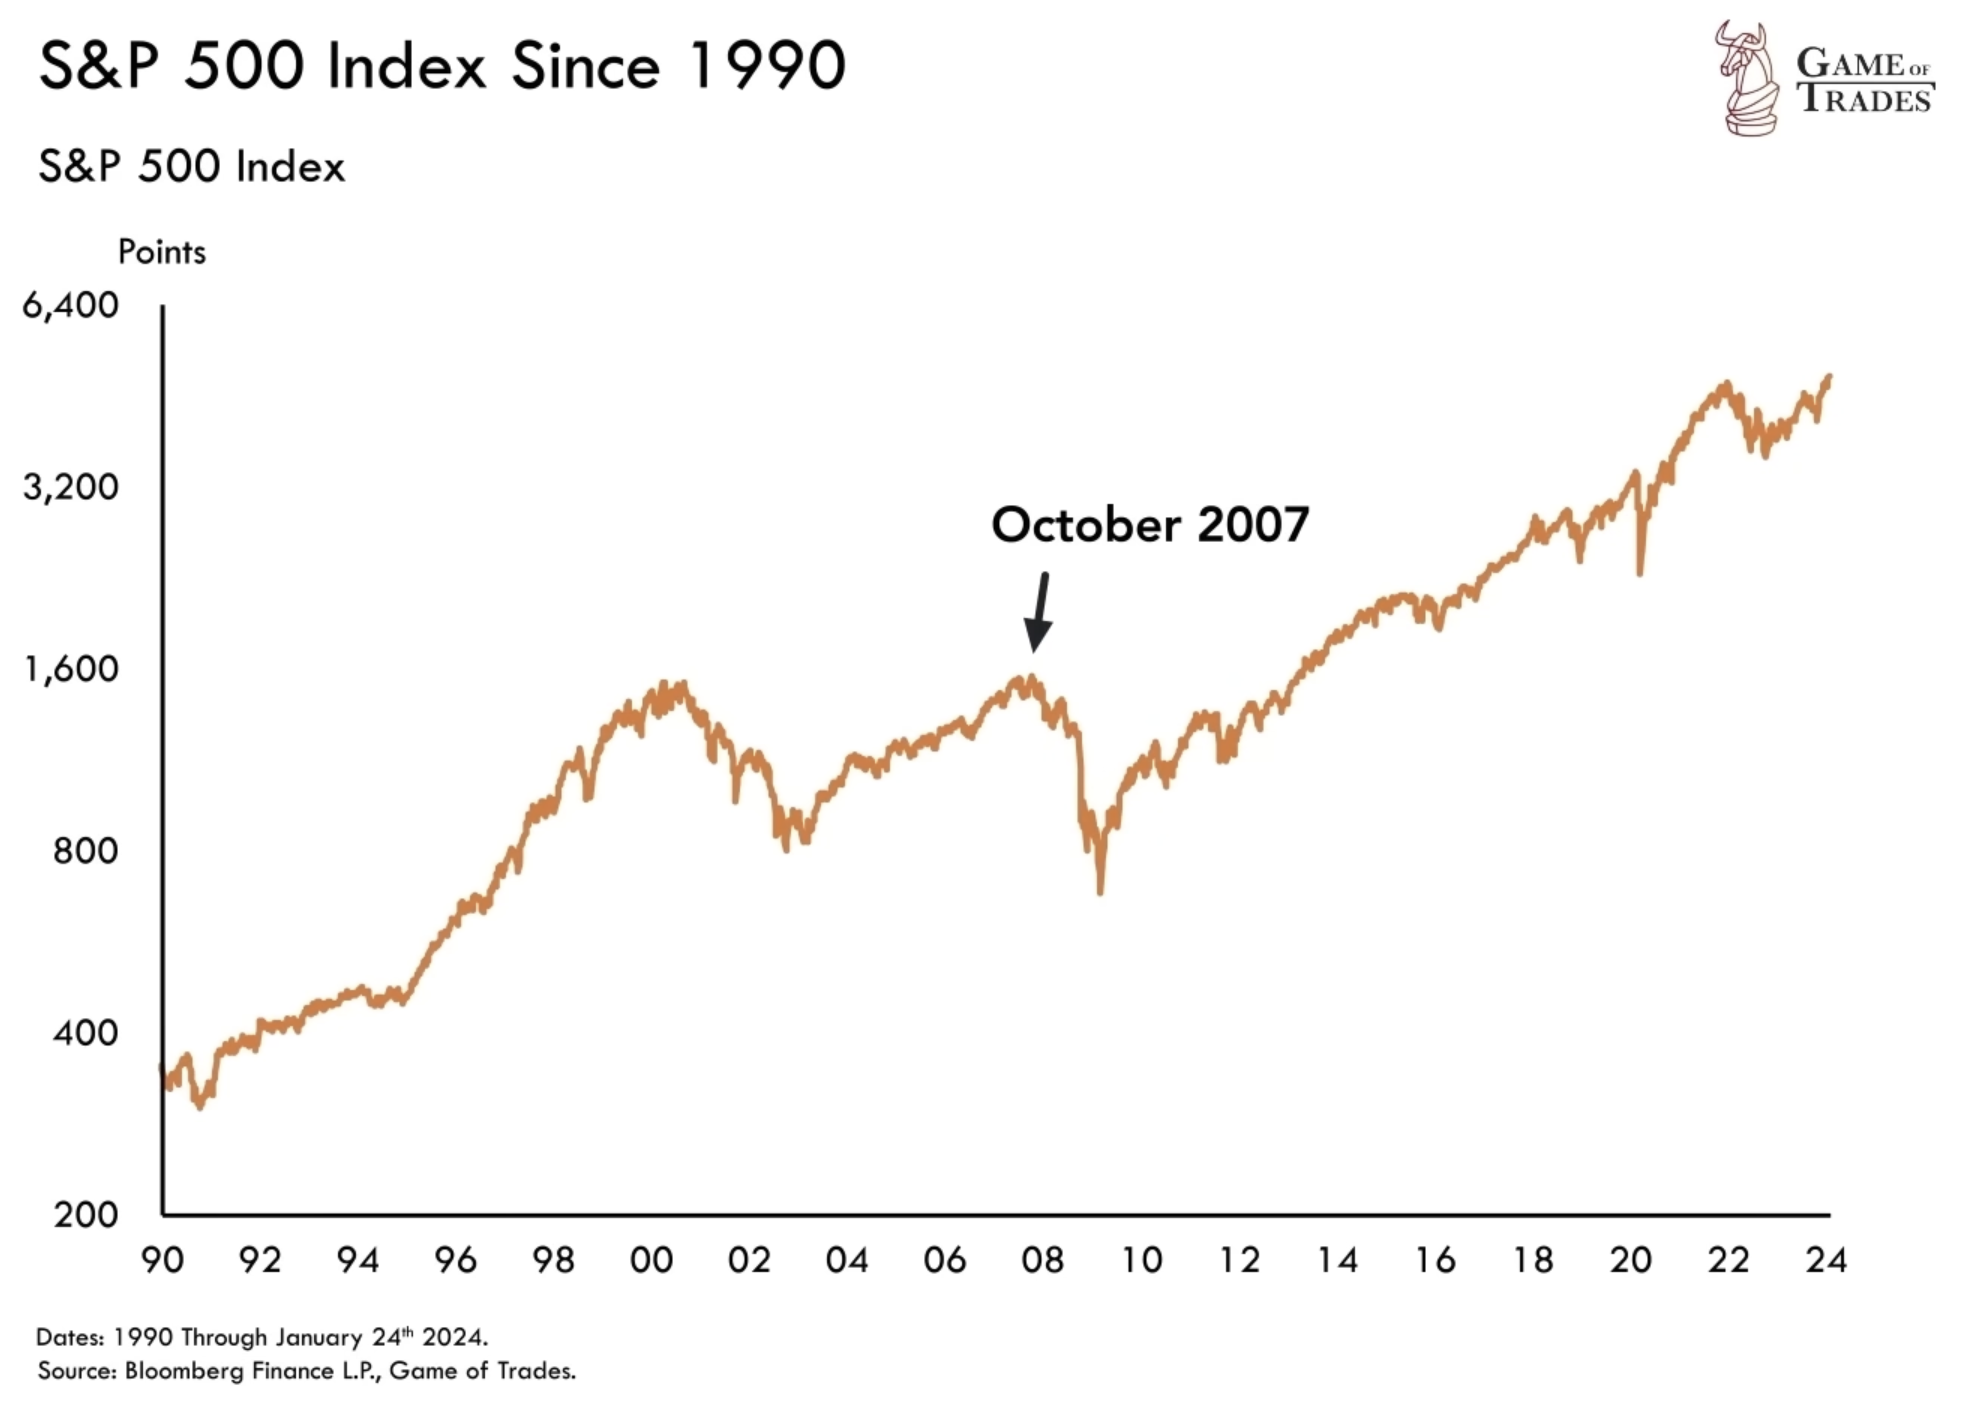 S&P 500 Index 1990